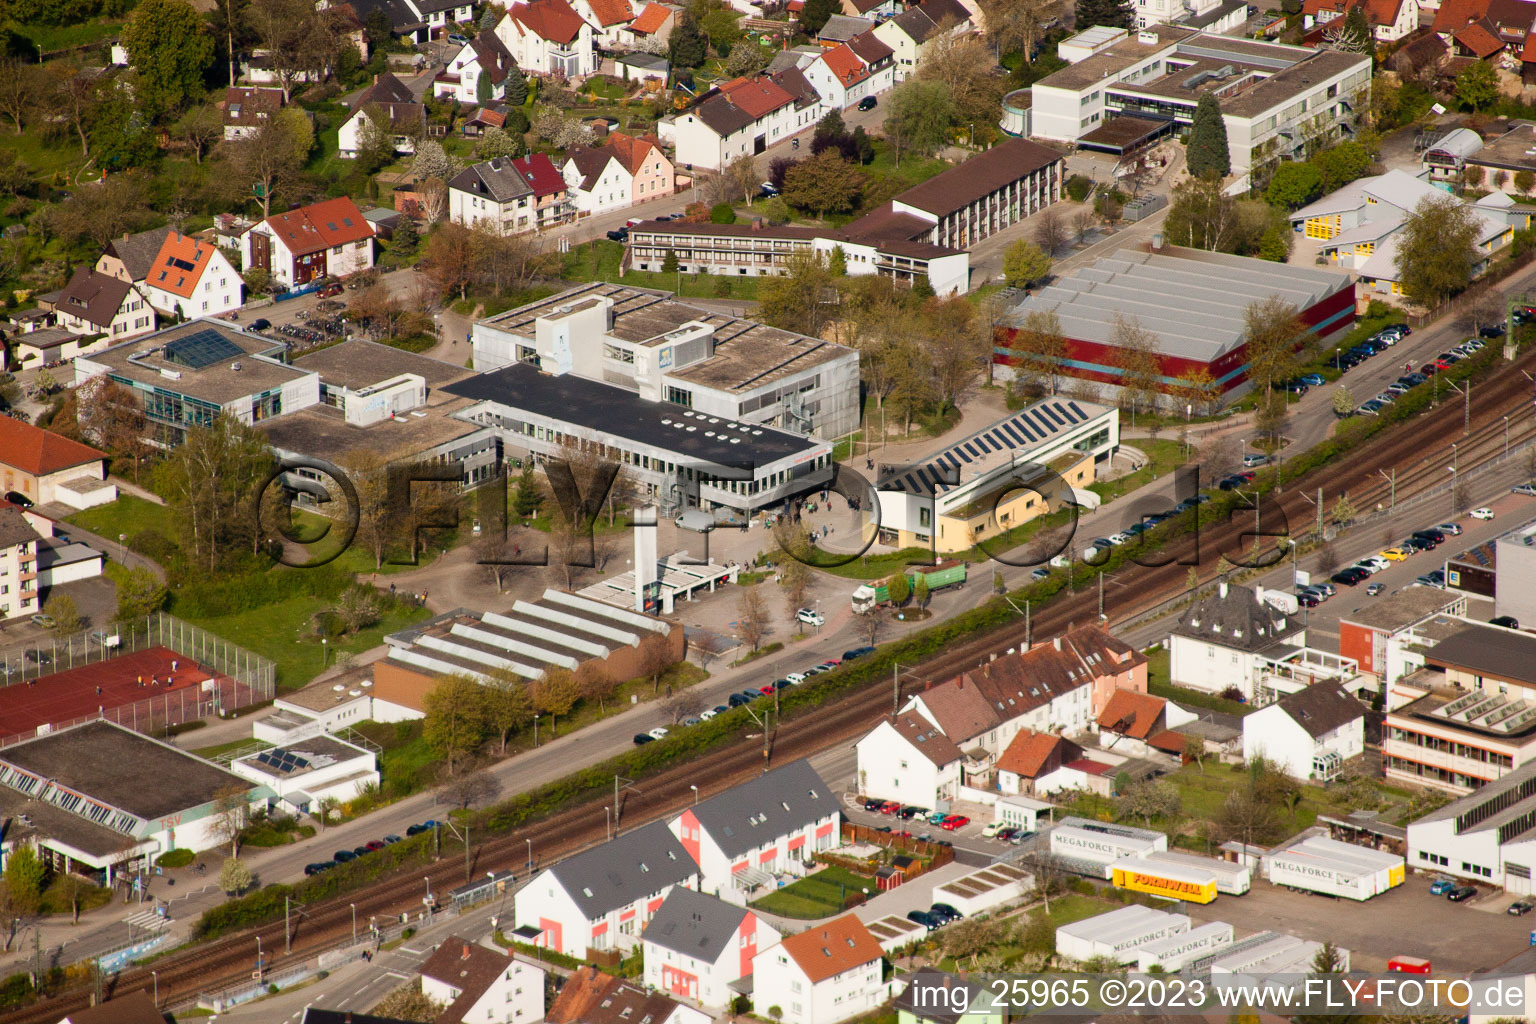 Ludwig-Marum-Gymnasium Pfinztal à le quartier Berghausen in Pfinztal dans le département Bade-Wurtemberg, Allemagne d'en haut